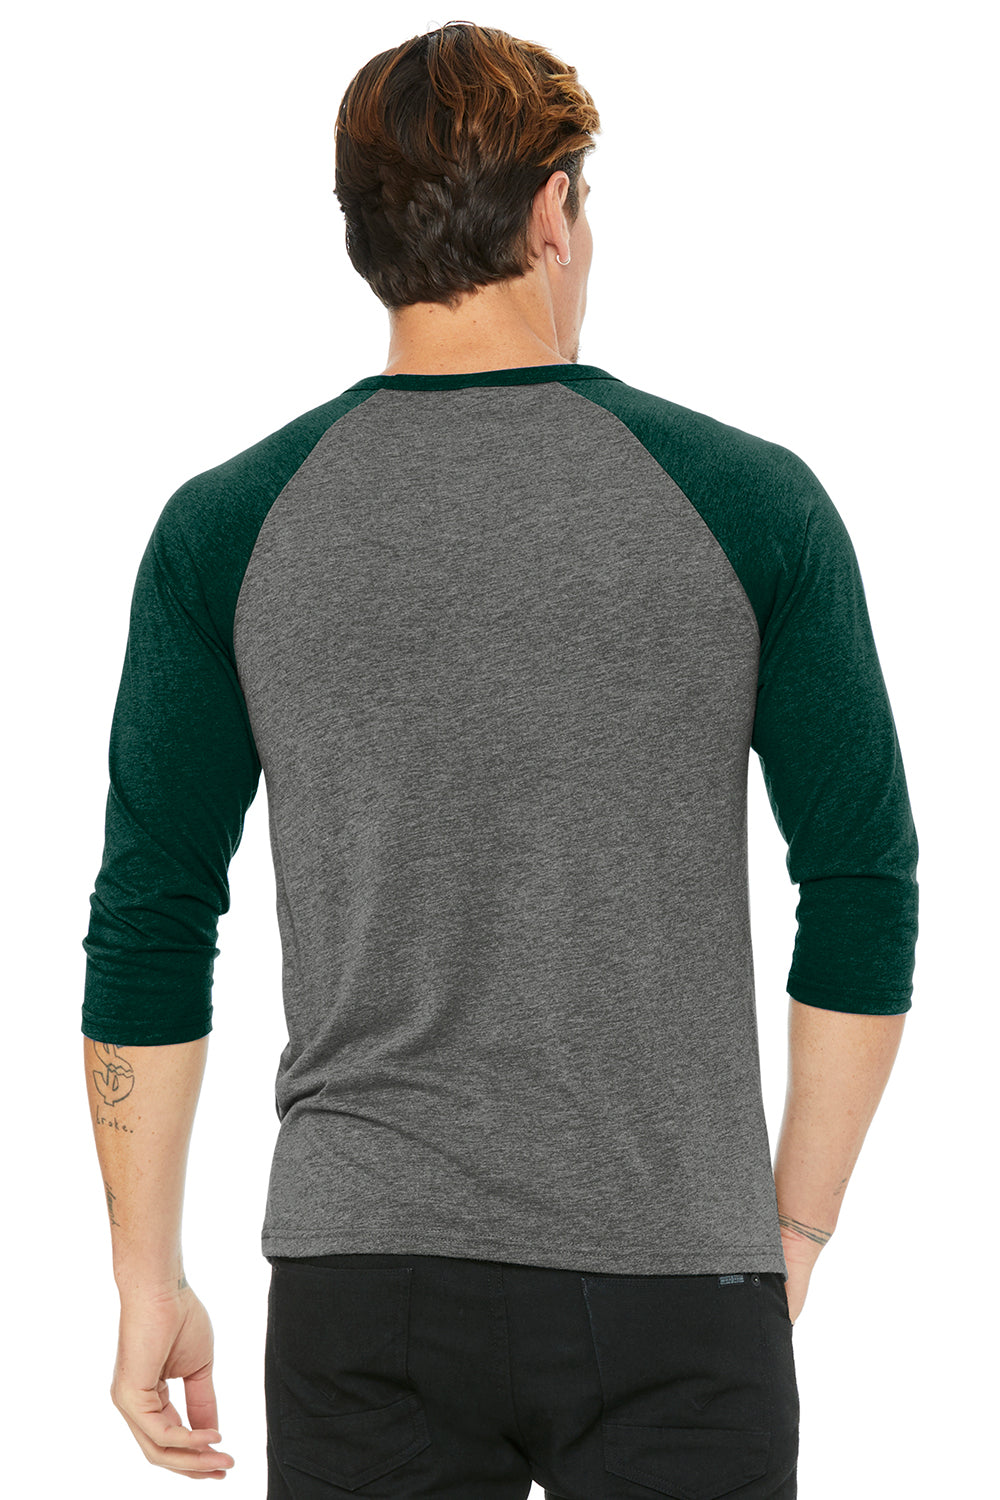 Bella + Canvas BC3200/3200 Mens 3/4 Sleeve Crewneck T-Shirt Grey/Emerald Green Model Back